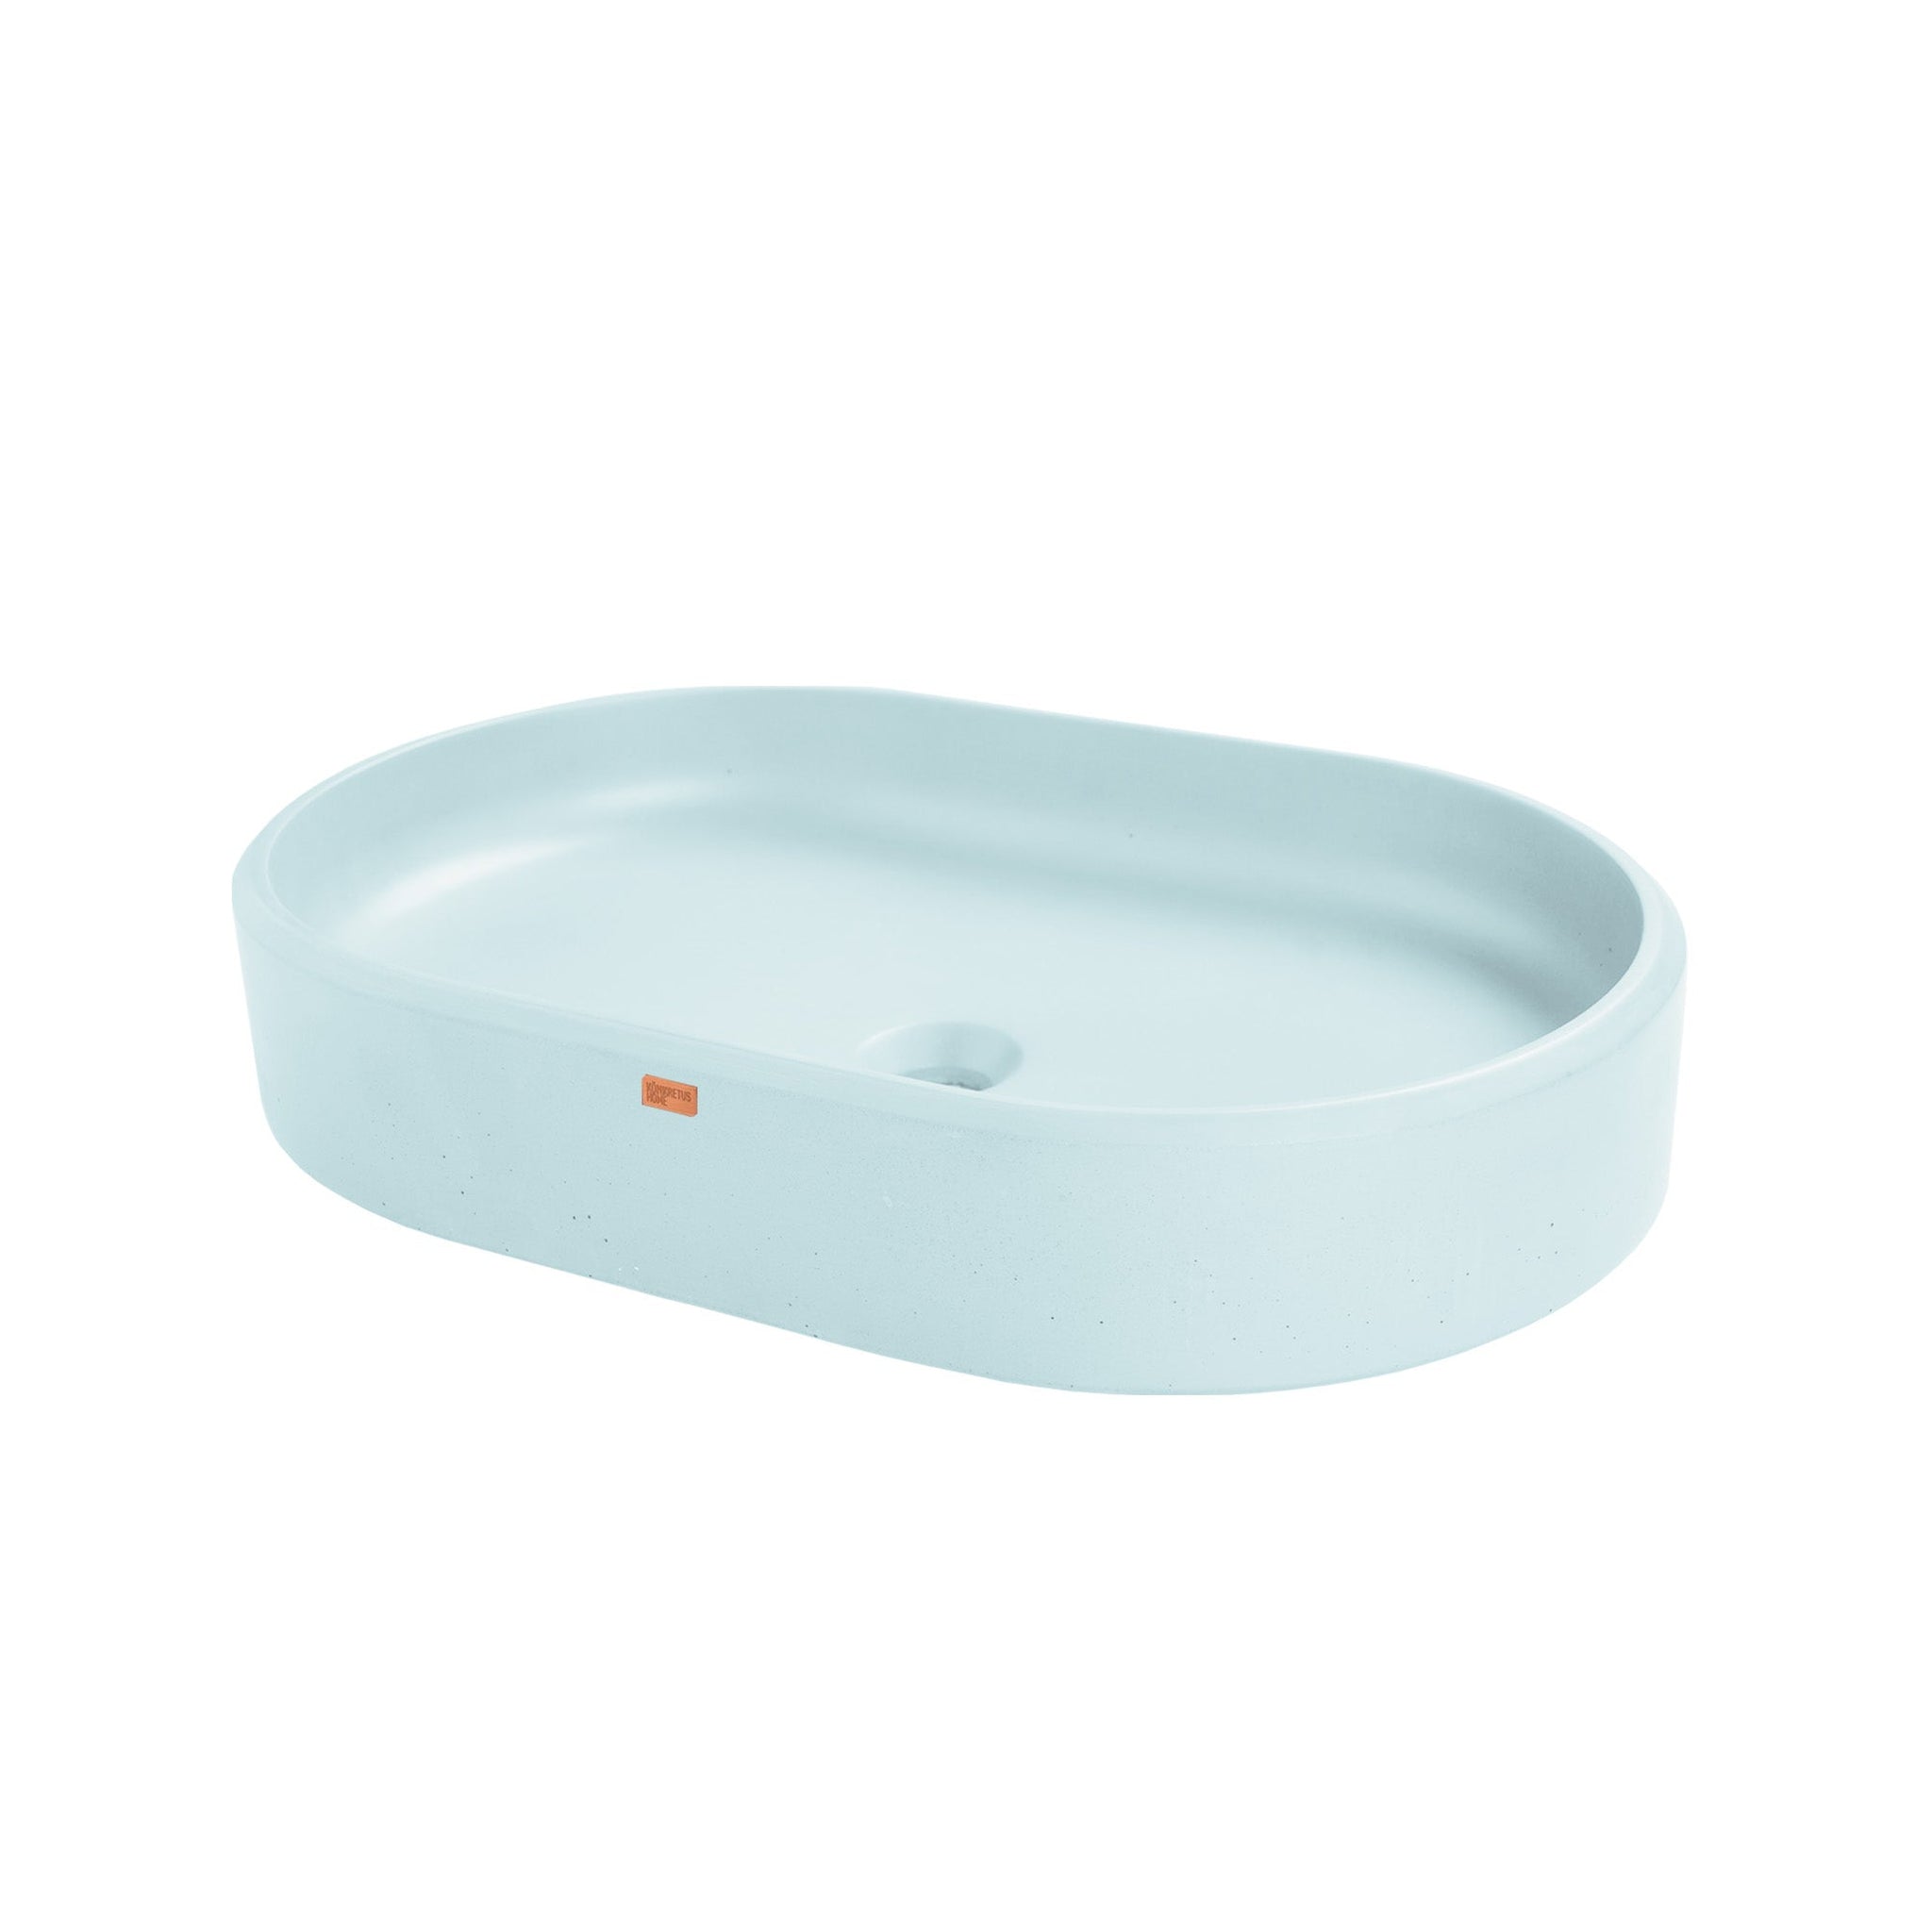 Konkretus, Konkretus Ubud02 22" Caribbean Blue Top Mount Oval Vessel Concrete Bathroom Sink